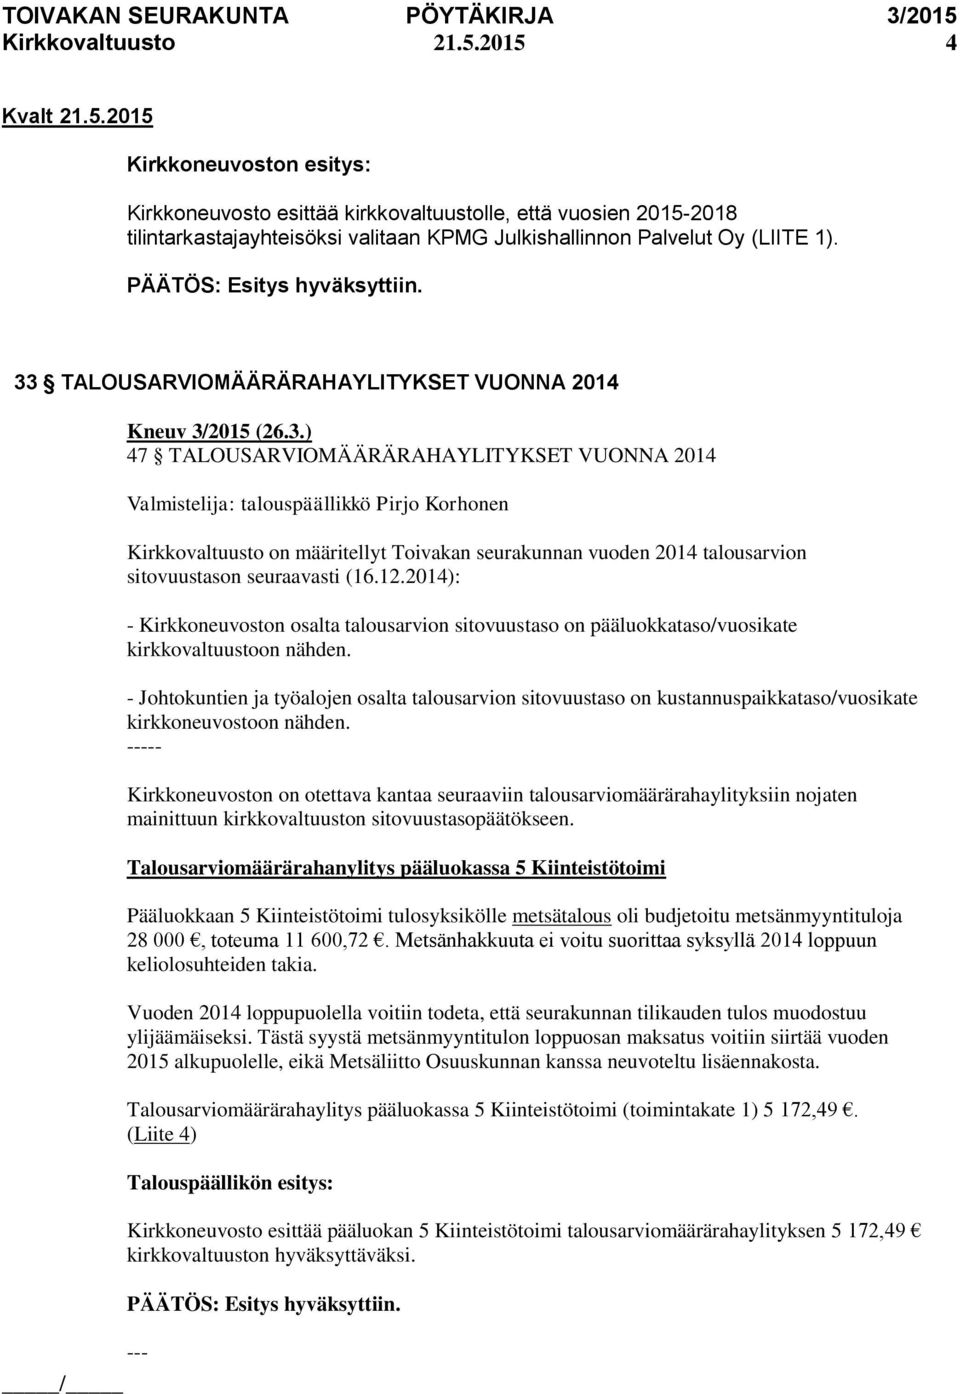 2014 talousarvion sitovuustason seuraavasti (16.12.2014): - Kirkkoneuvoston osalta talousarvion sitovuustaso on pääluokkataso/vuosikate kirkkovaltuustoon nähden.